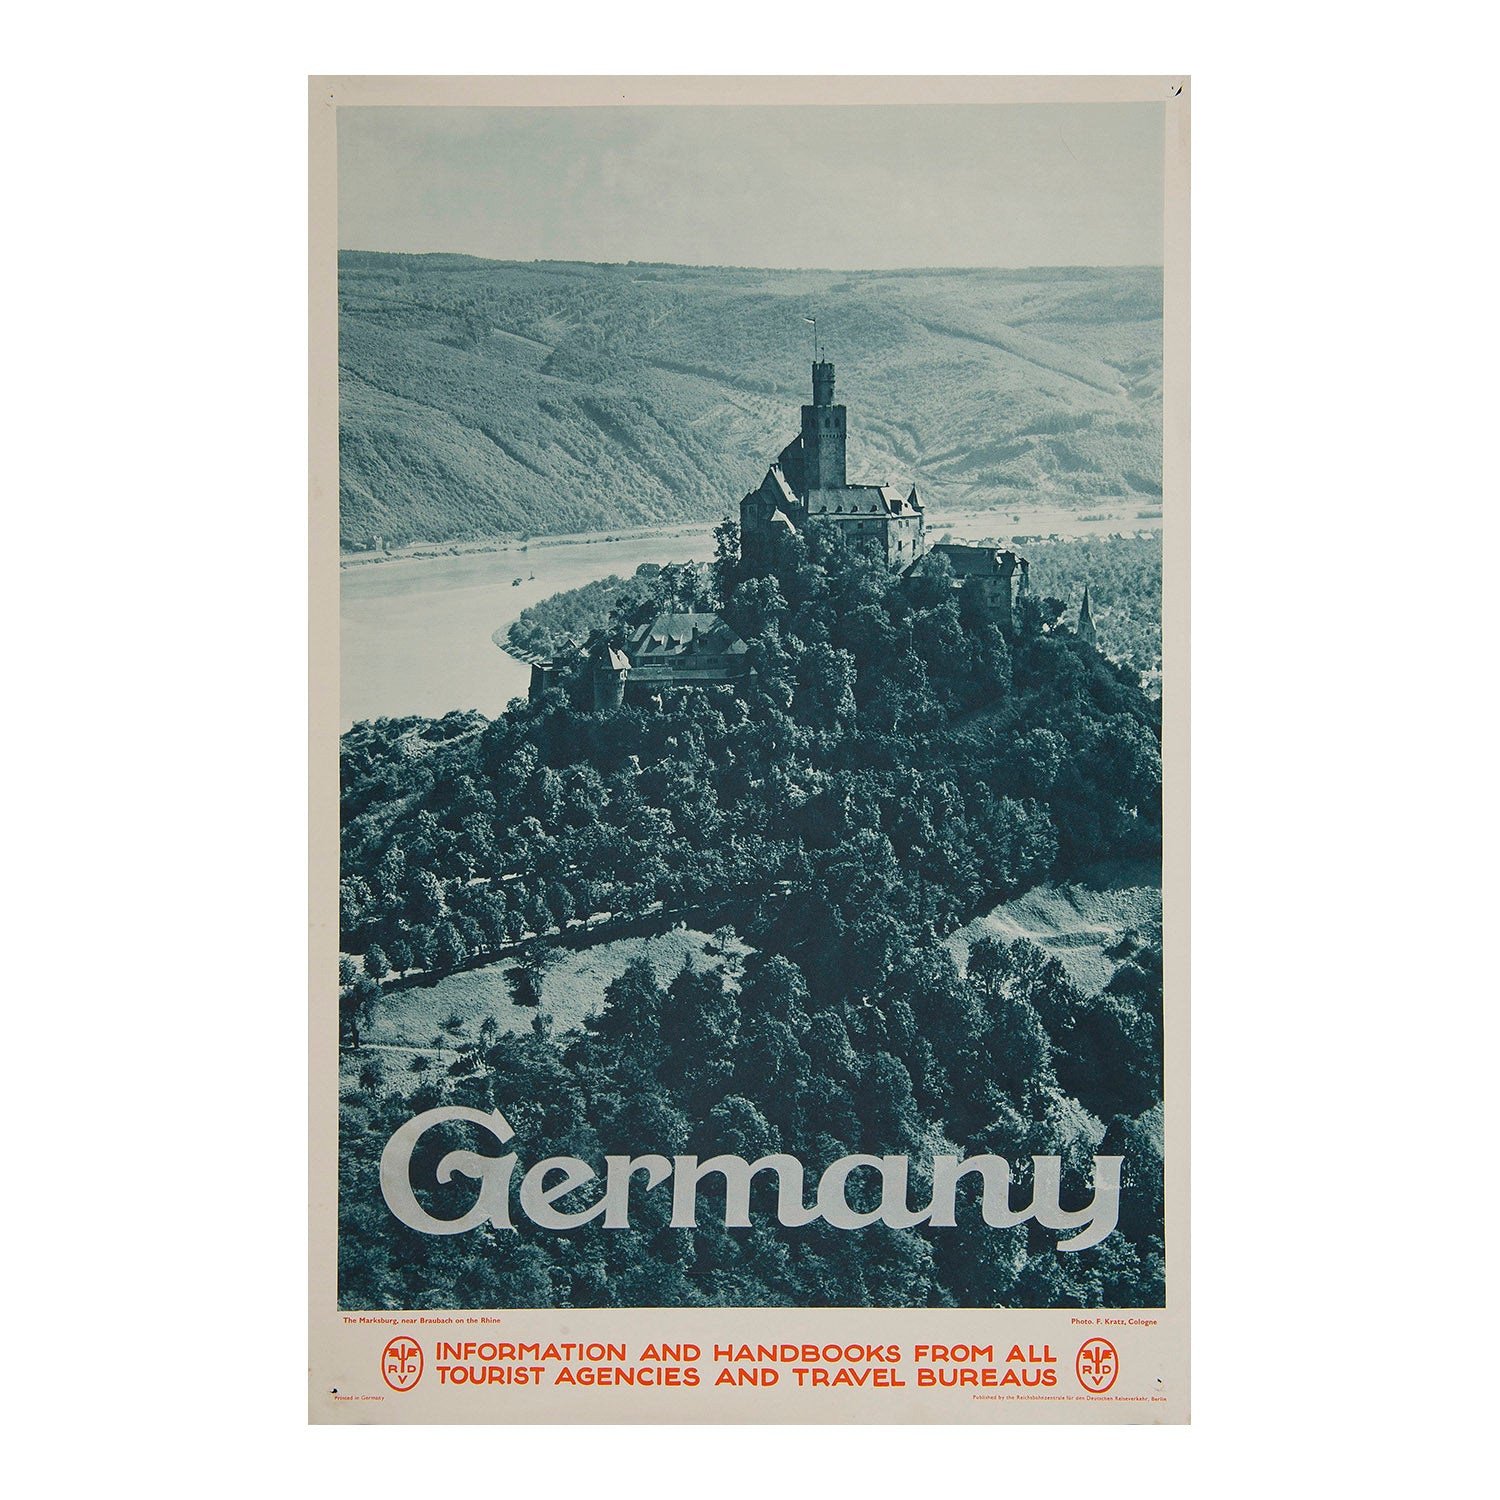 An original photographic German Railway poster published by the Reichsbahnzentrale für den Deutschen Reiseverkehr (RDV) in about 1930, promoting Marksburg castle, Braubach, on the river Rhine.